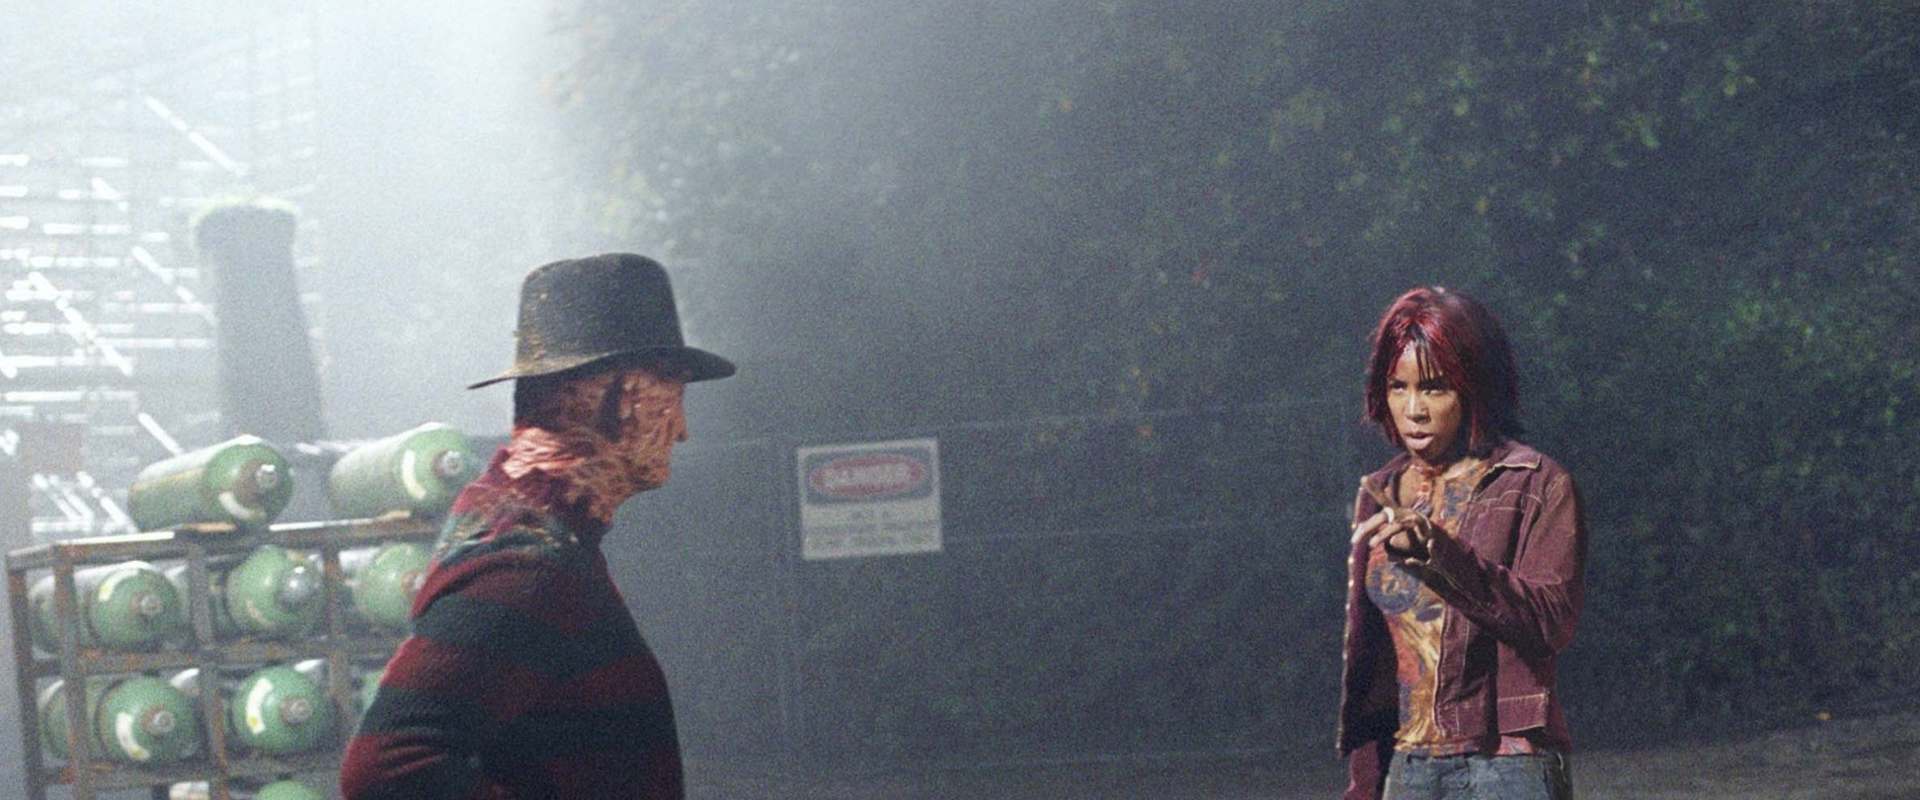 Freddy vs. Jason background 1